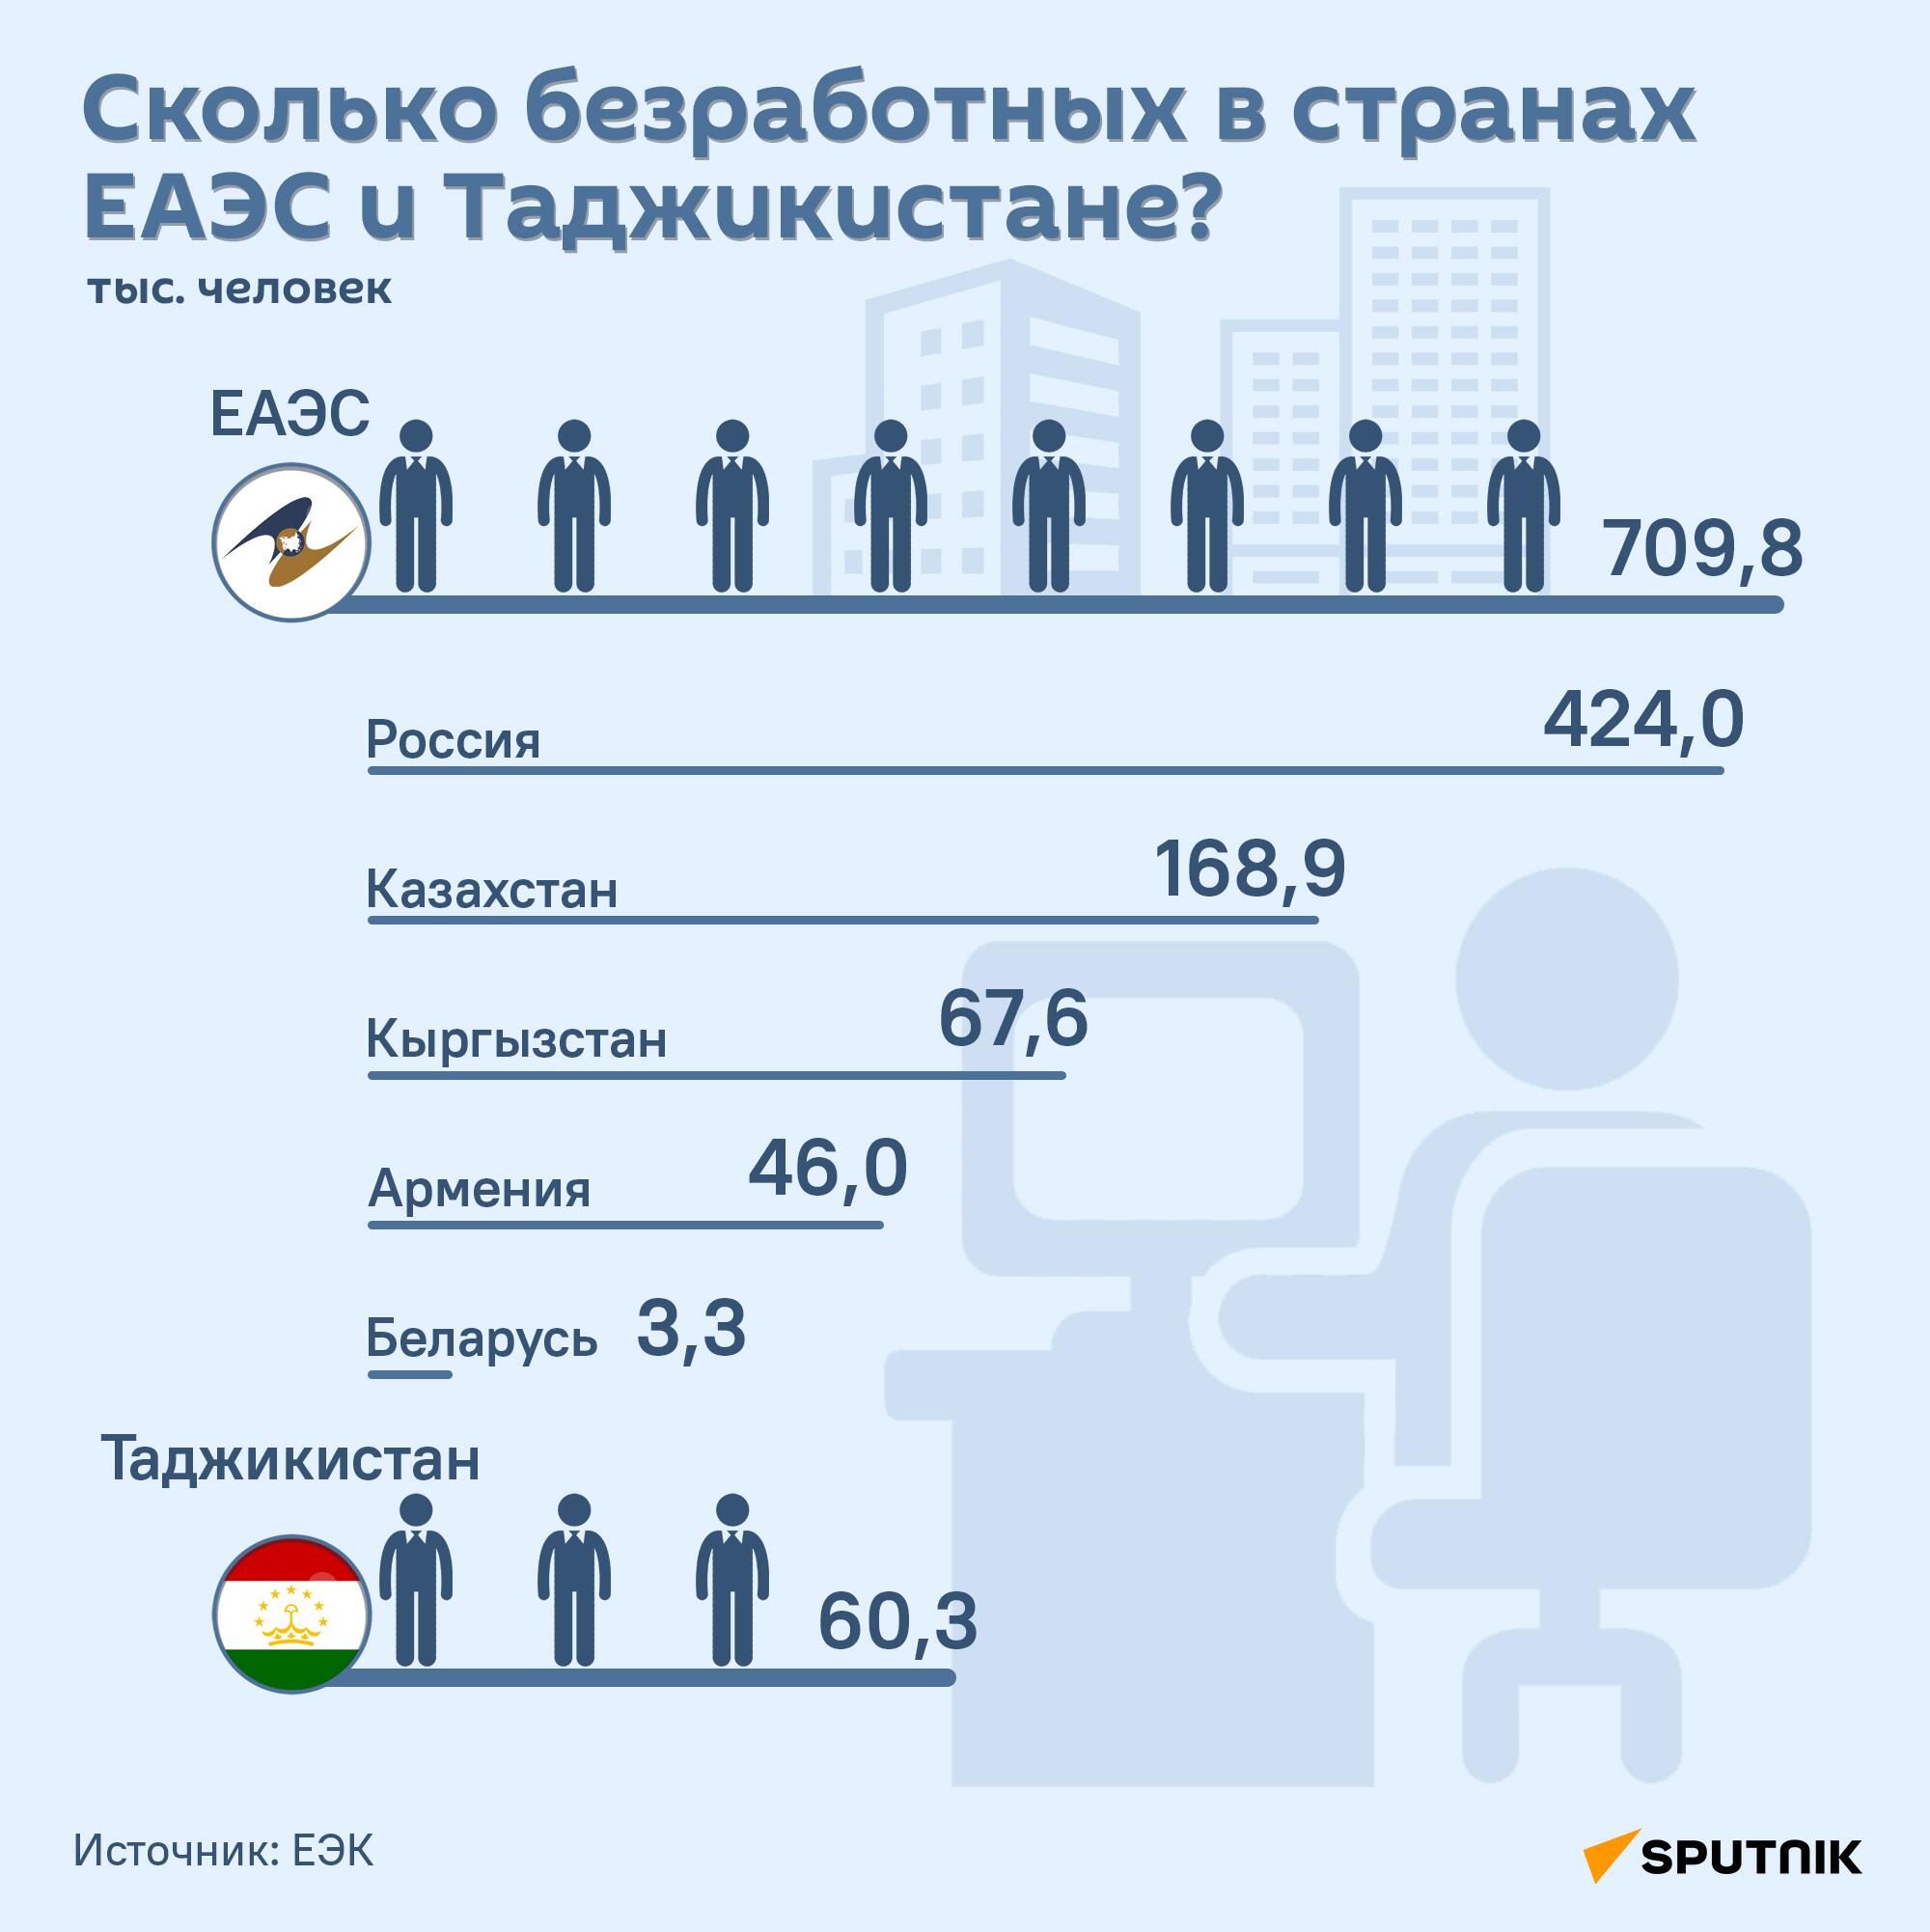 Сколько безработных в странах ЕАЭС и Таджикистане? - Sputnik Таджикистан